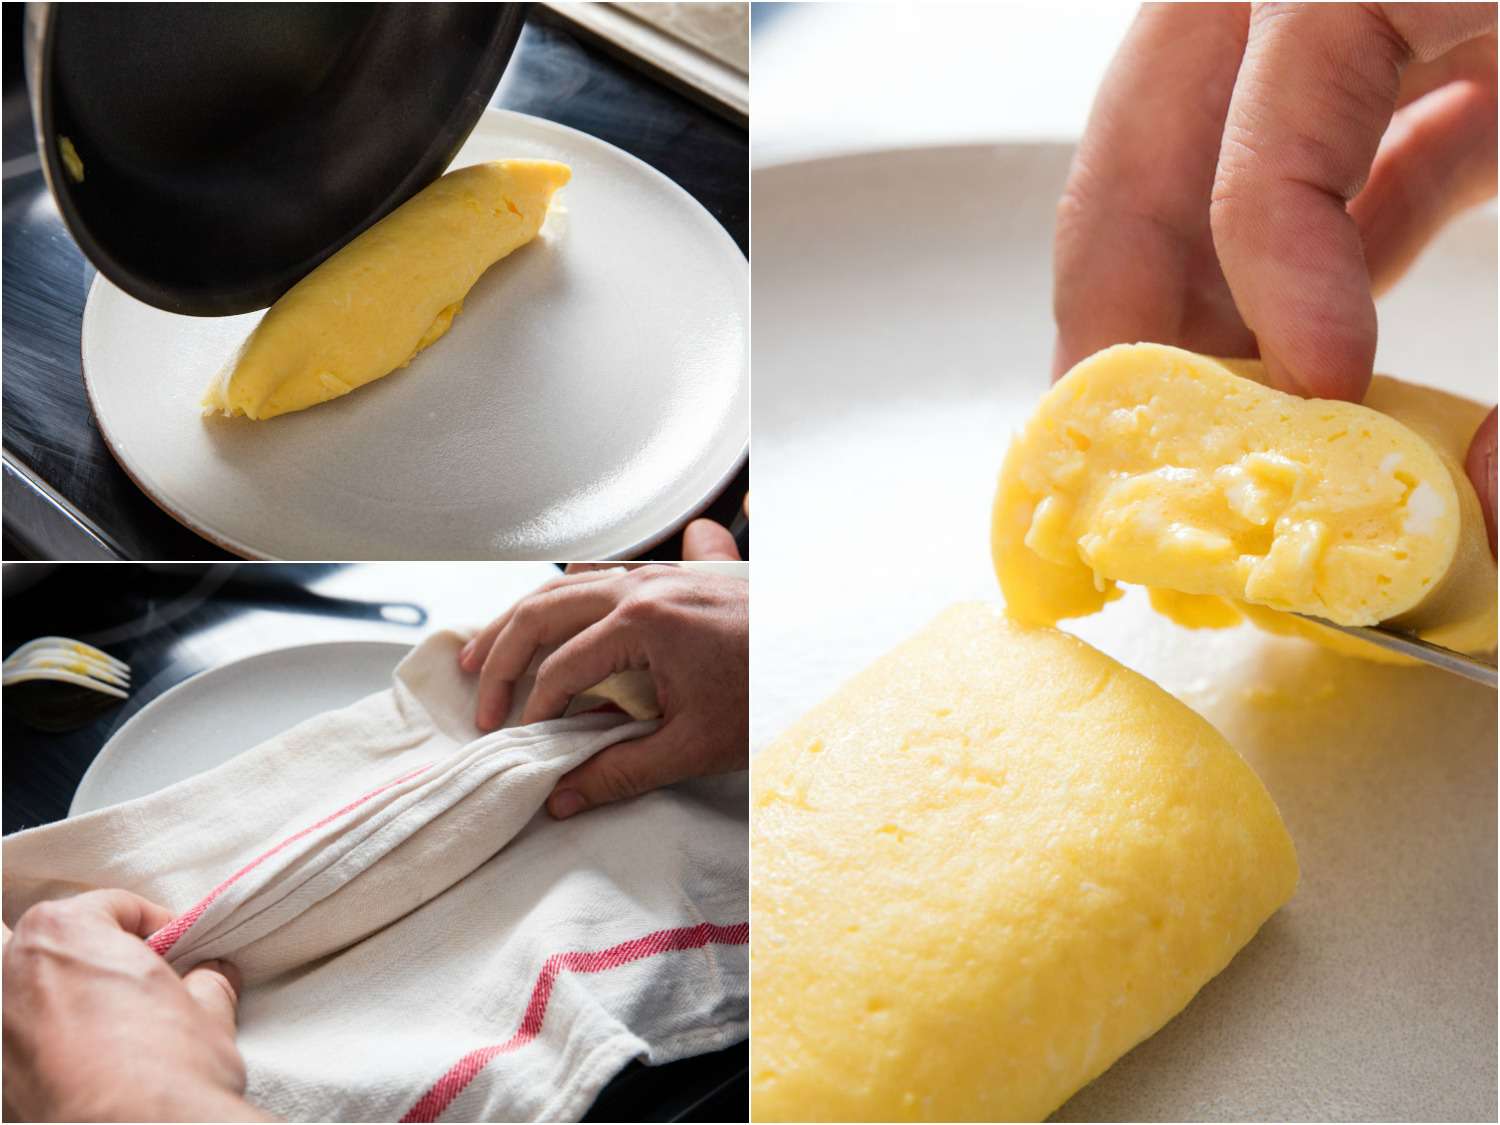 拼贴的法国煎蛋照片:把煎蛋从煎锅里倒到盘子上，用毛巾塑造煎蛋的形状，切开煎蛋，露出柔软的中心gydF4y2Ba